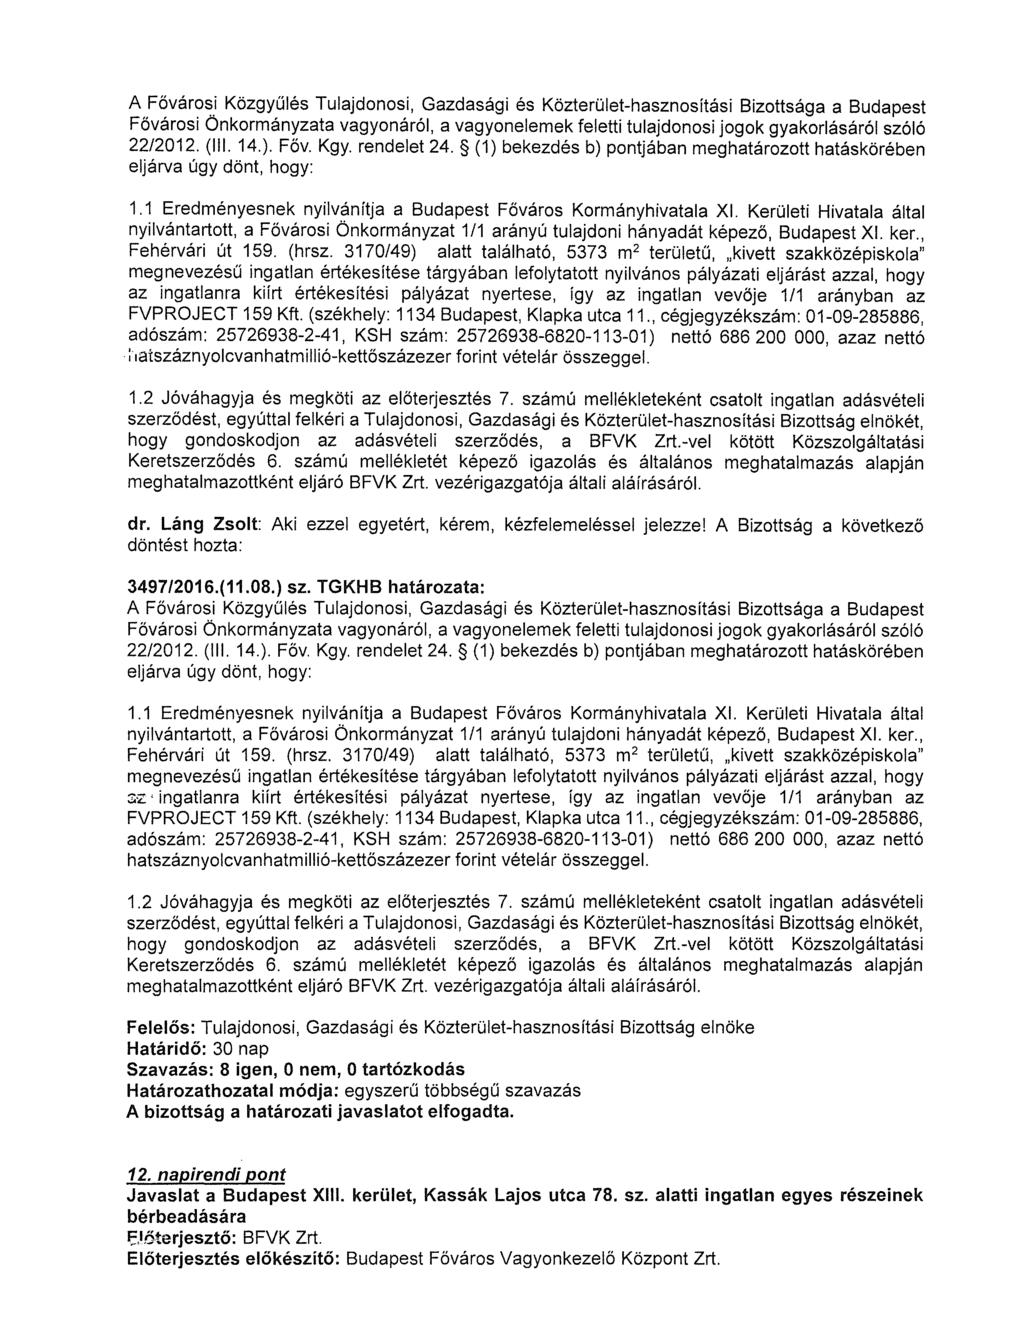 A Főváro~.i Közgyűlés Tulajdonosi, Gazdasági és Közterület-hasznosítási Bizottsága a Budapest Fővárosi Onkormányzata vagyonáról, a vagyonelemek feletti tulajdonosi jogok gyakorlásáról szóló 22/2012.